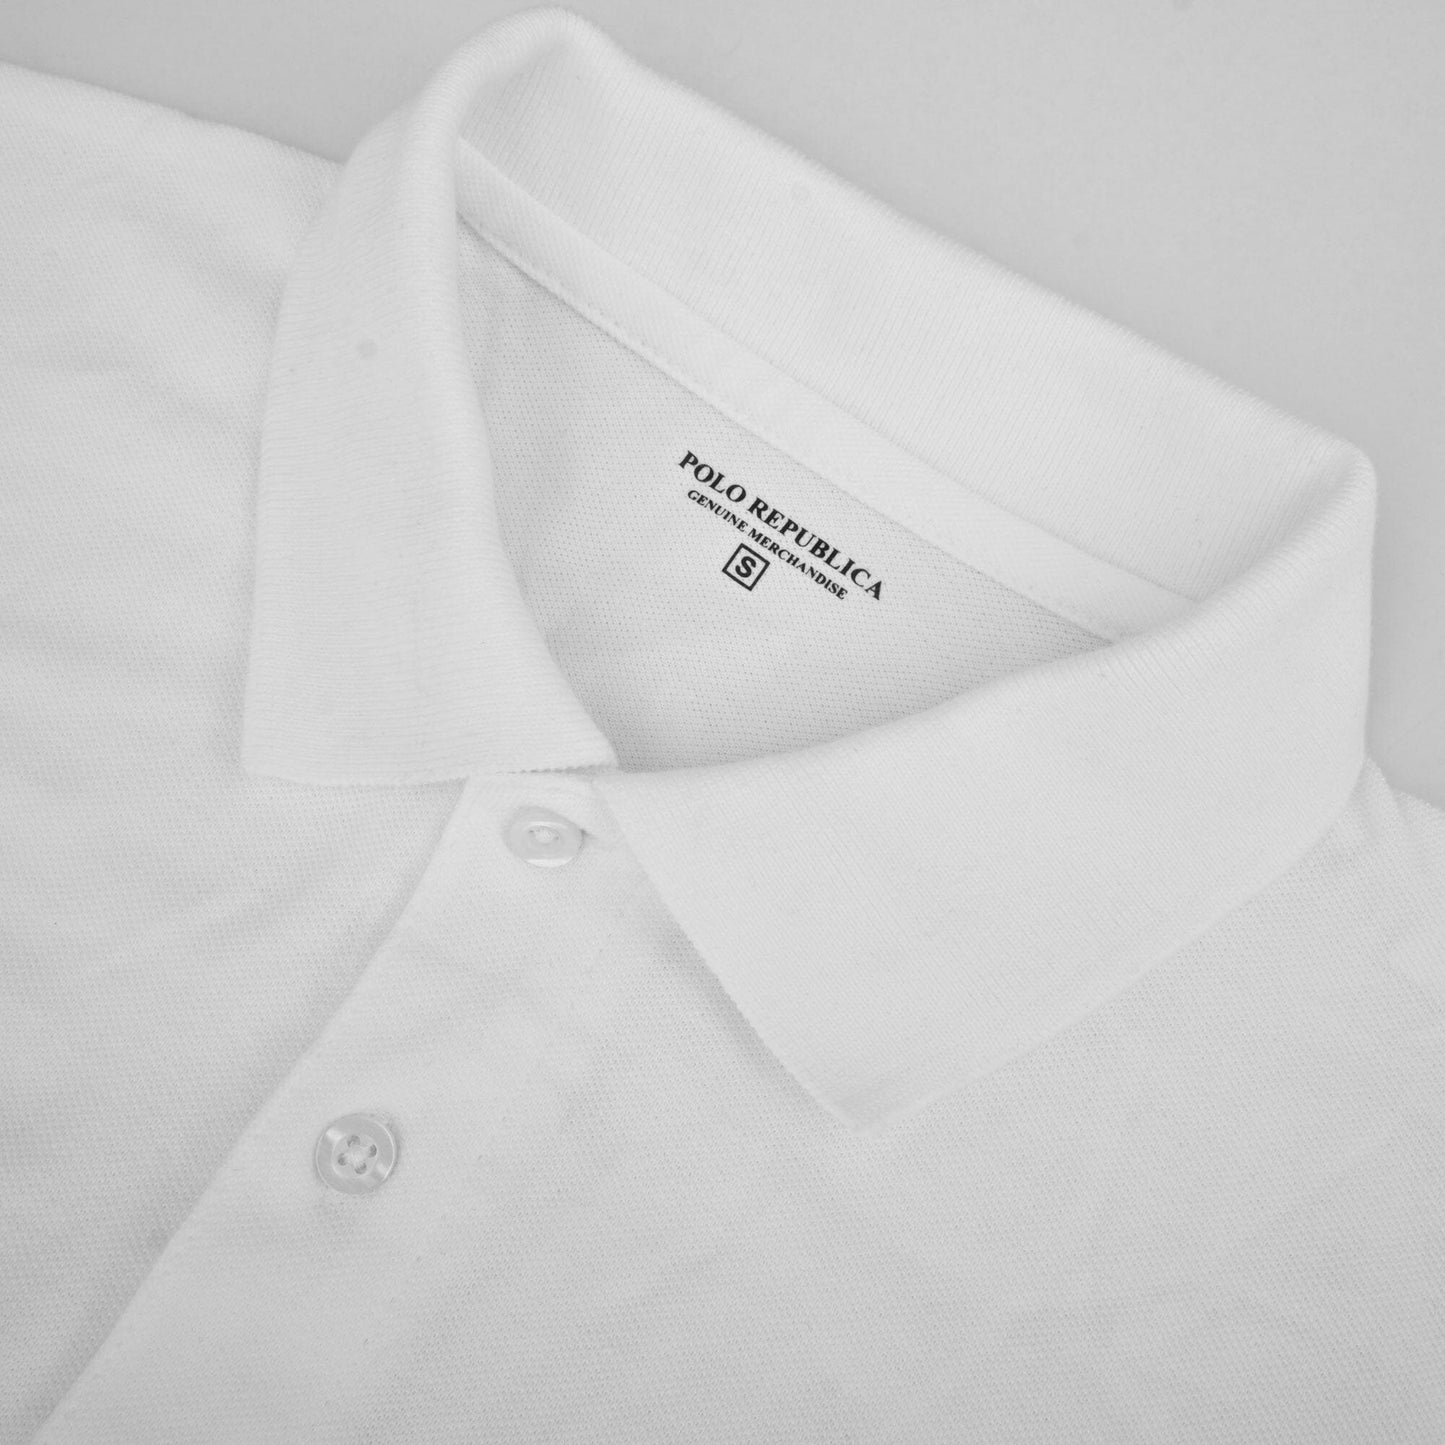 Polo Republica Men's Bear & 5 Embroidered Short Sleeve Polo Shirt Men's Polo Shirt Polo Republica 